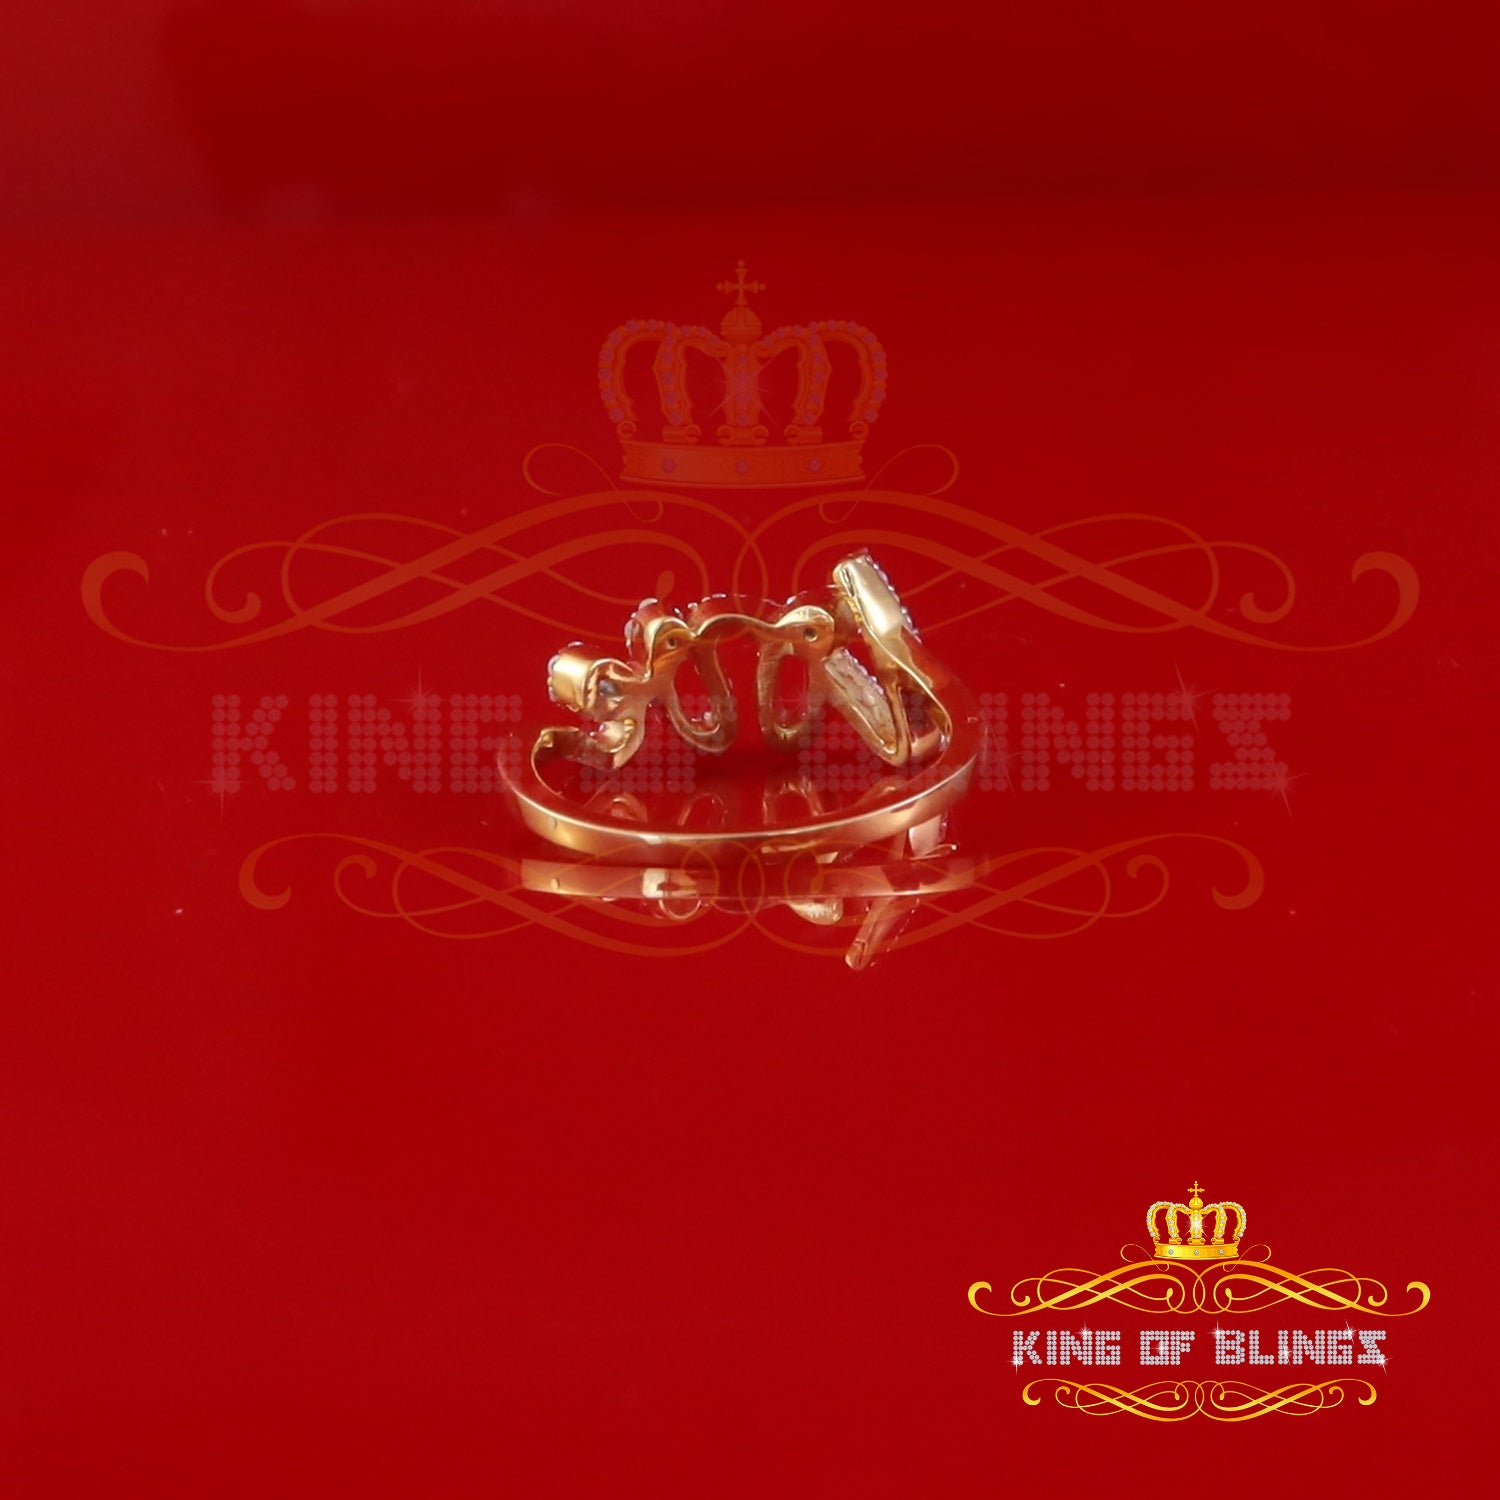 King of Bling's Yellow 925 SterlingSilver 0.33ct VVS 'D' Moissanite 'Love' Rings SZ 7 for Women KING OF BLINGS